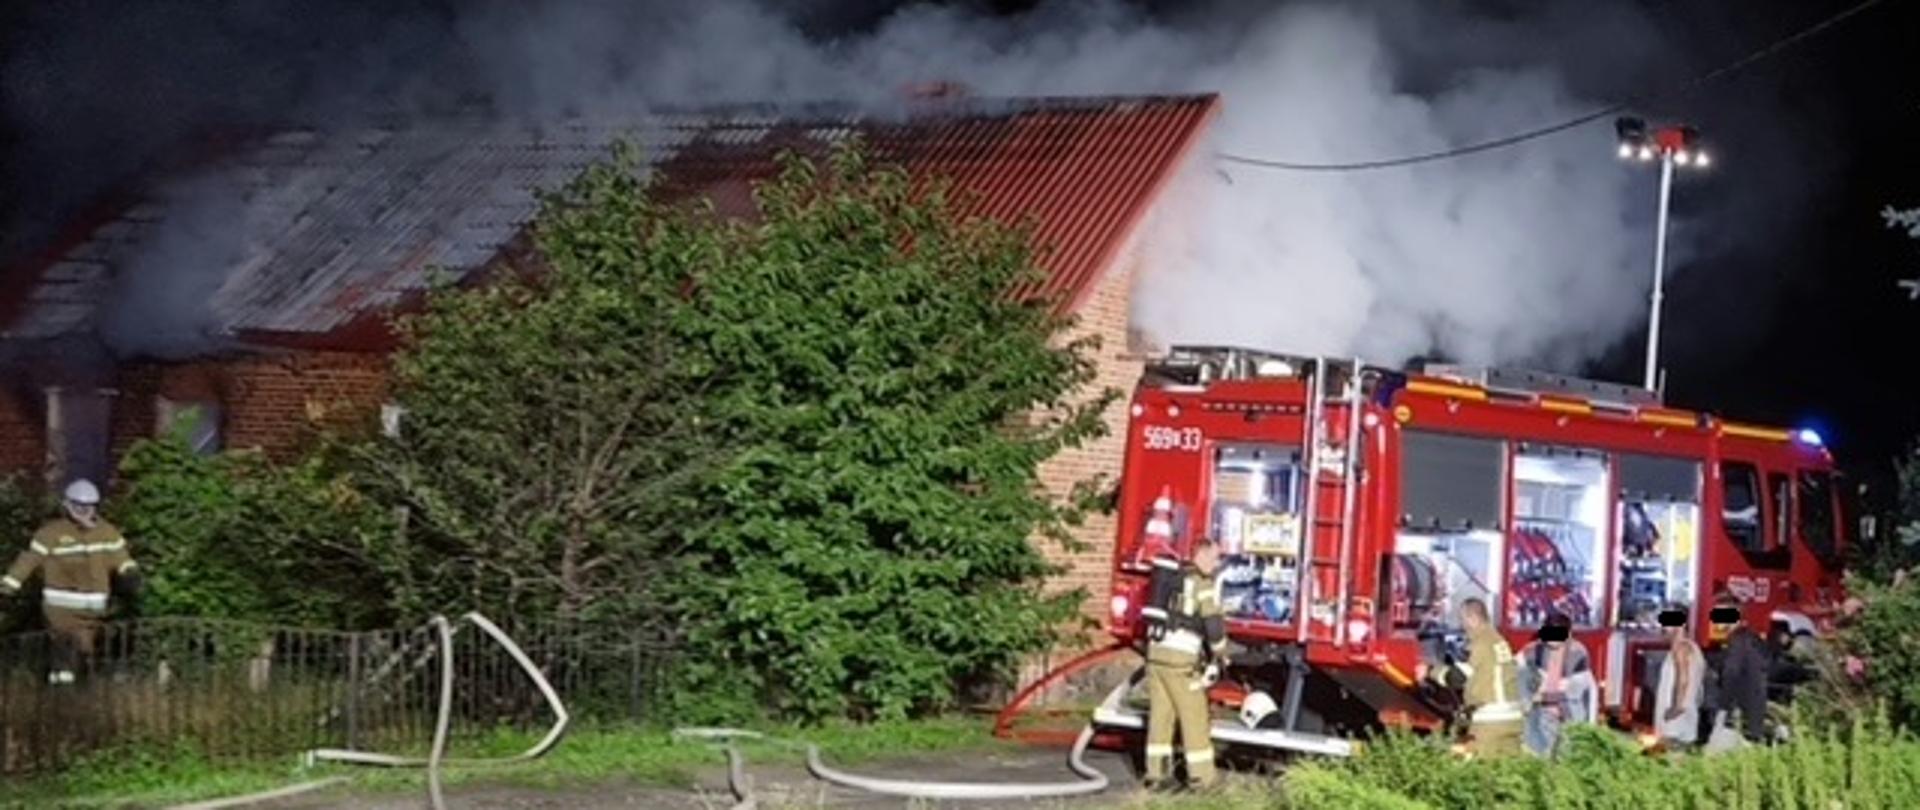 Czerwony, ceglany budynek parterowy o skośnym dachu, nad budynkiem widoczne kłęby dymu, z prawej strony znadjue się samochód gaśniczy przed którym stoją strażacy opiekujący się osobami poszkodowanymi w pożarze